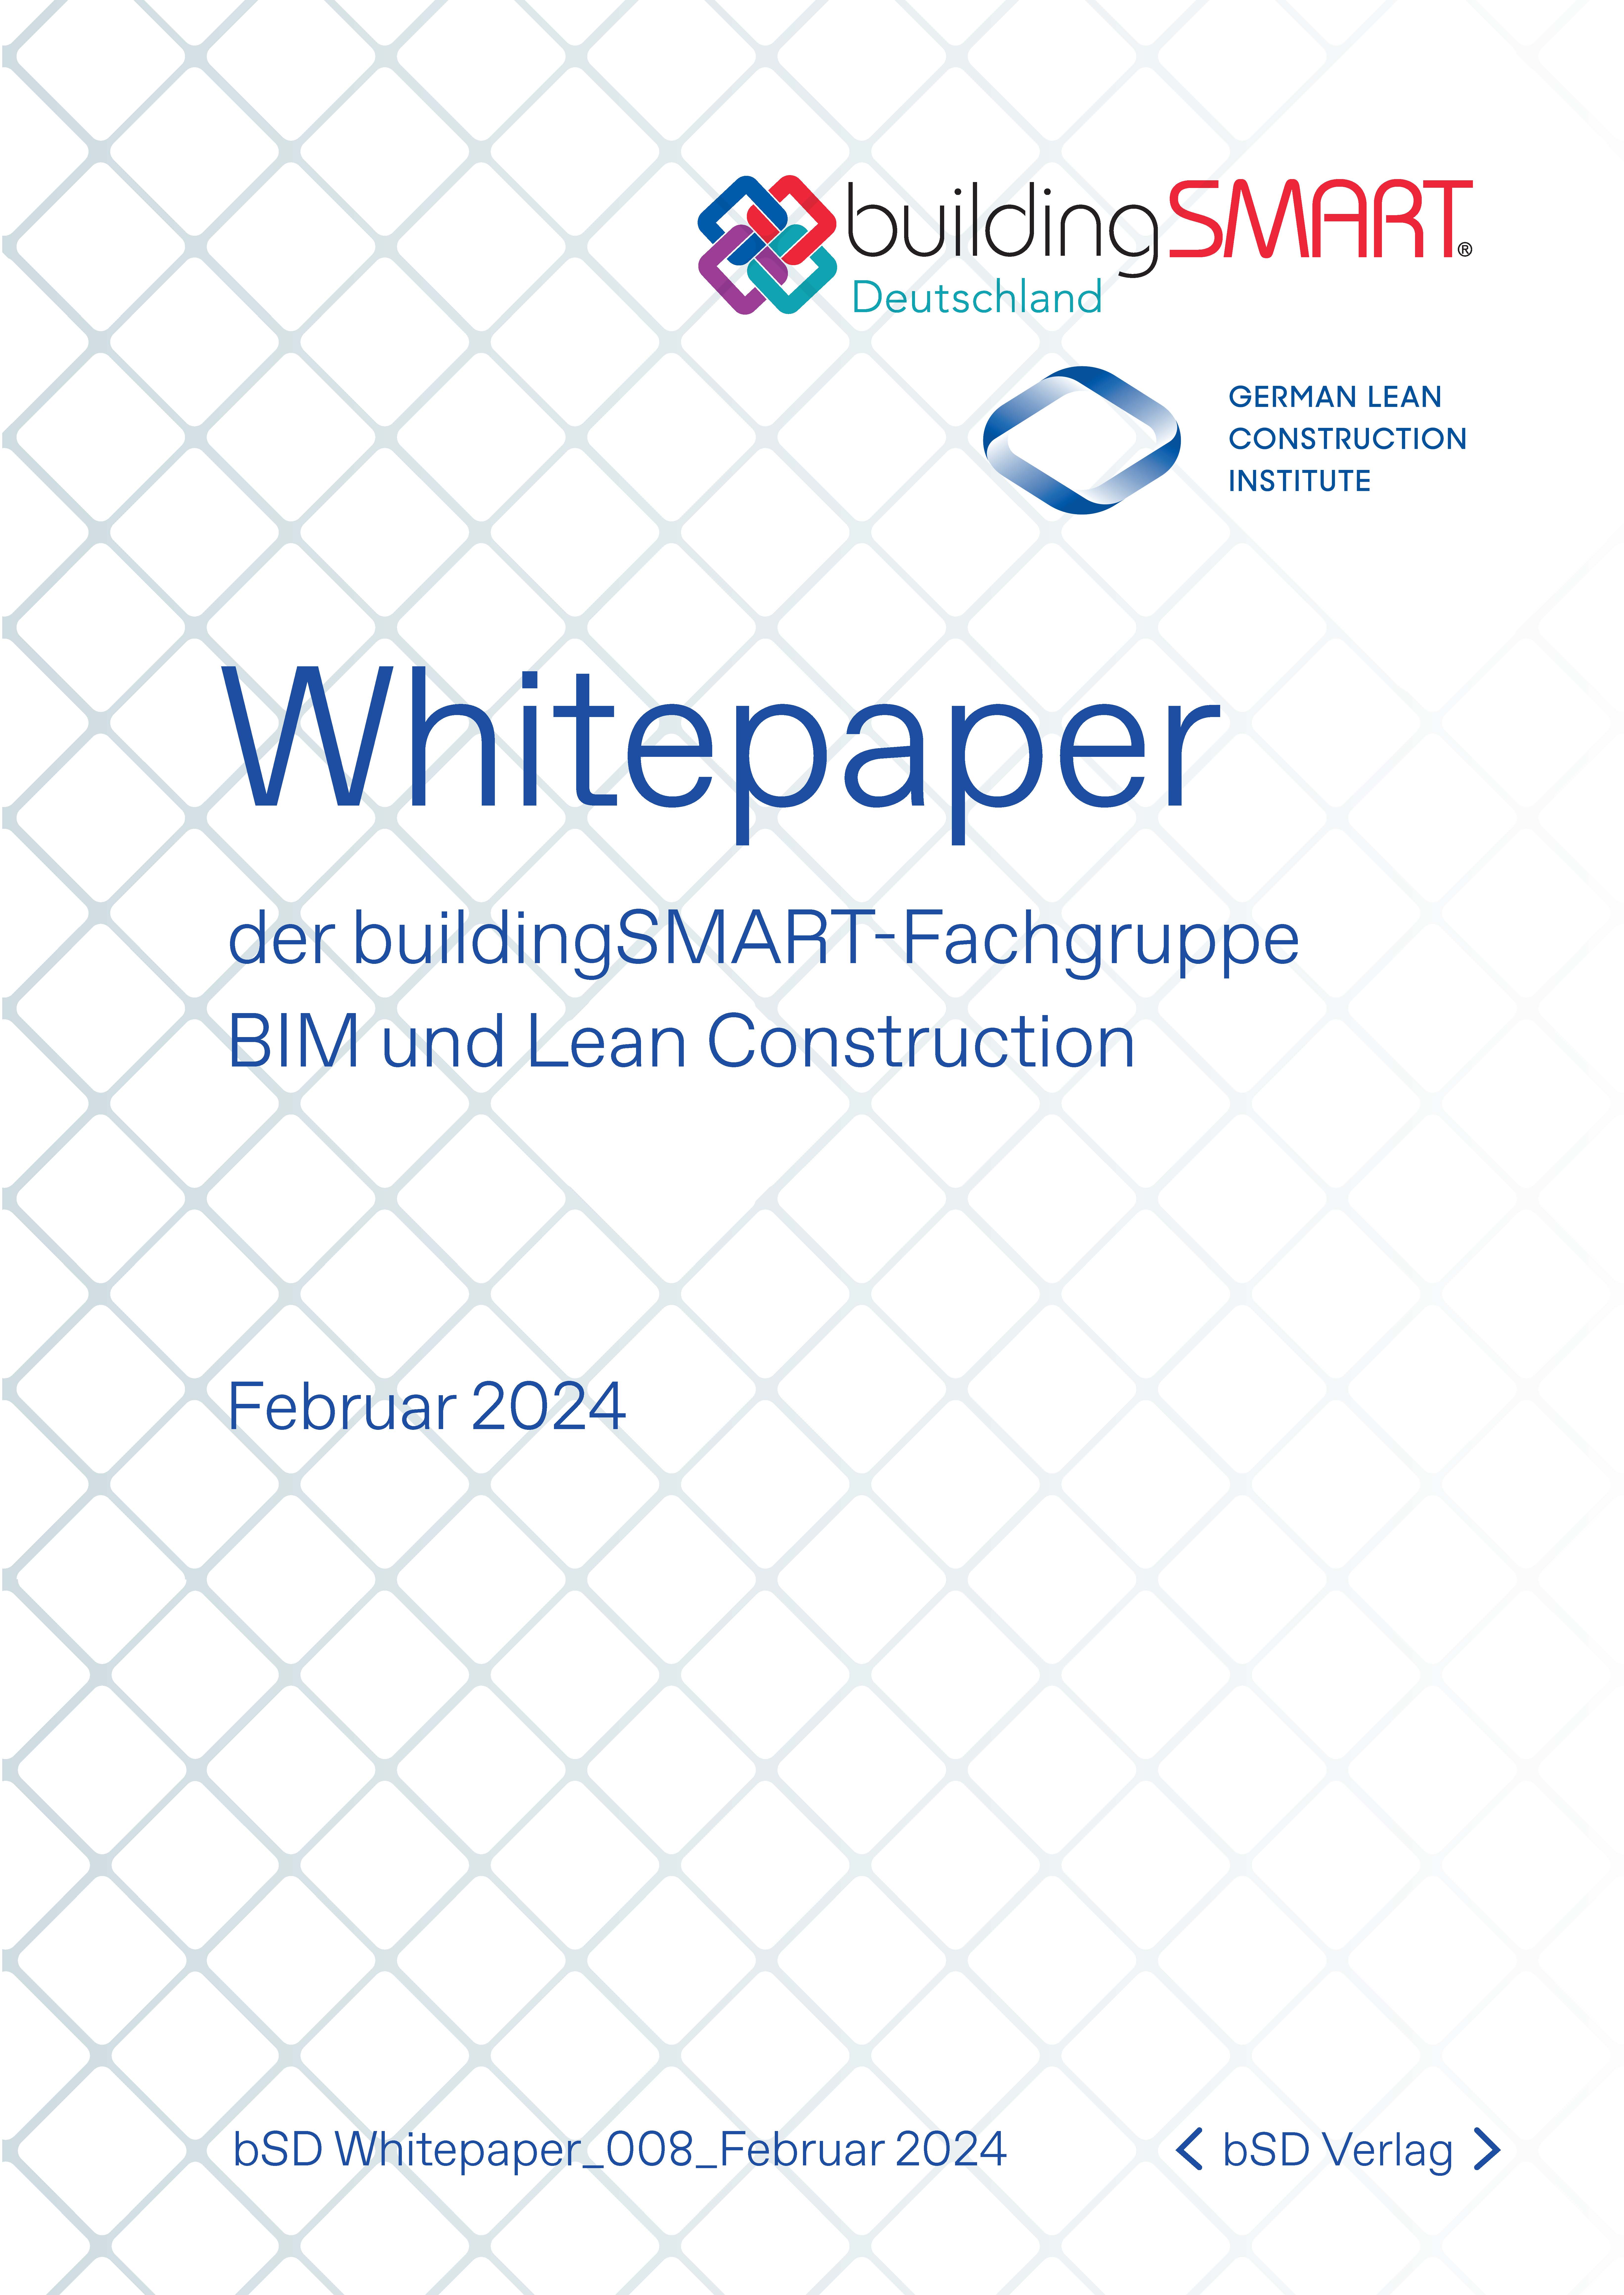 bSD Verlag/bSD Whitepaper BIM+LeanConstruction